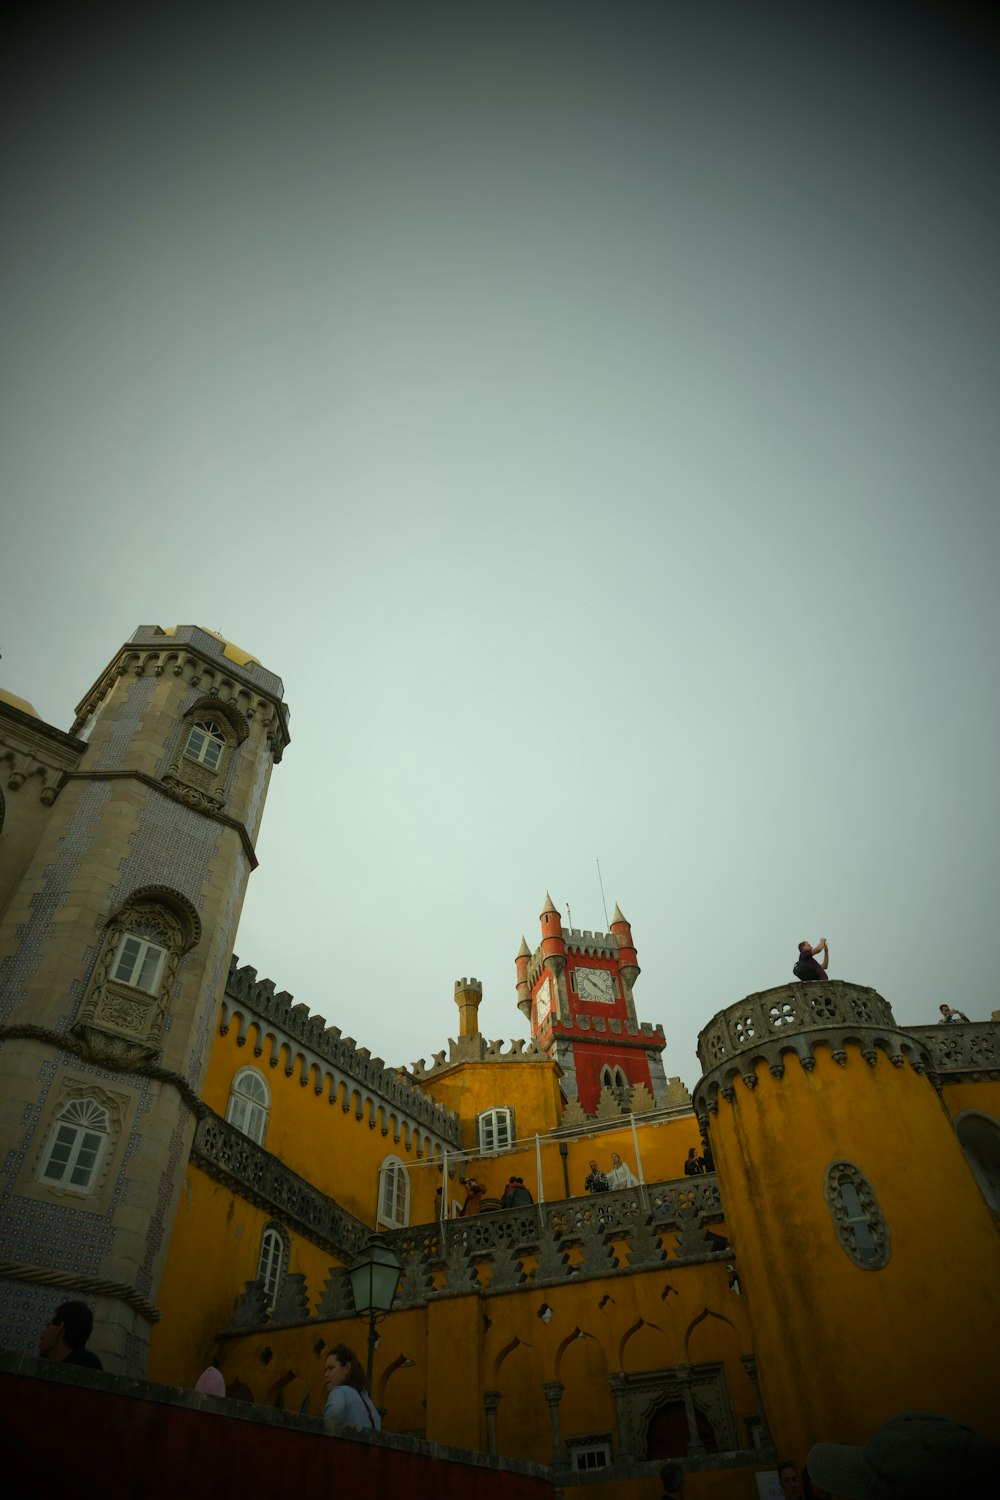 Un gran castillo amarillo con una torre del reloj